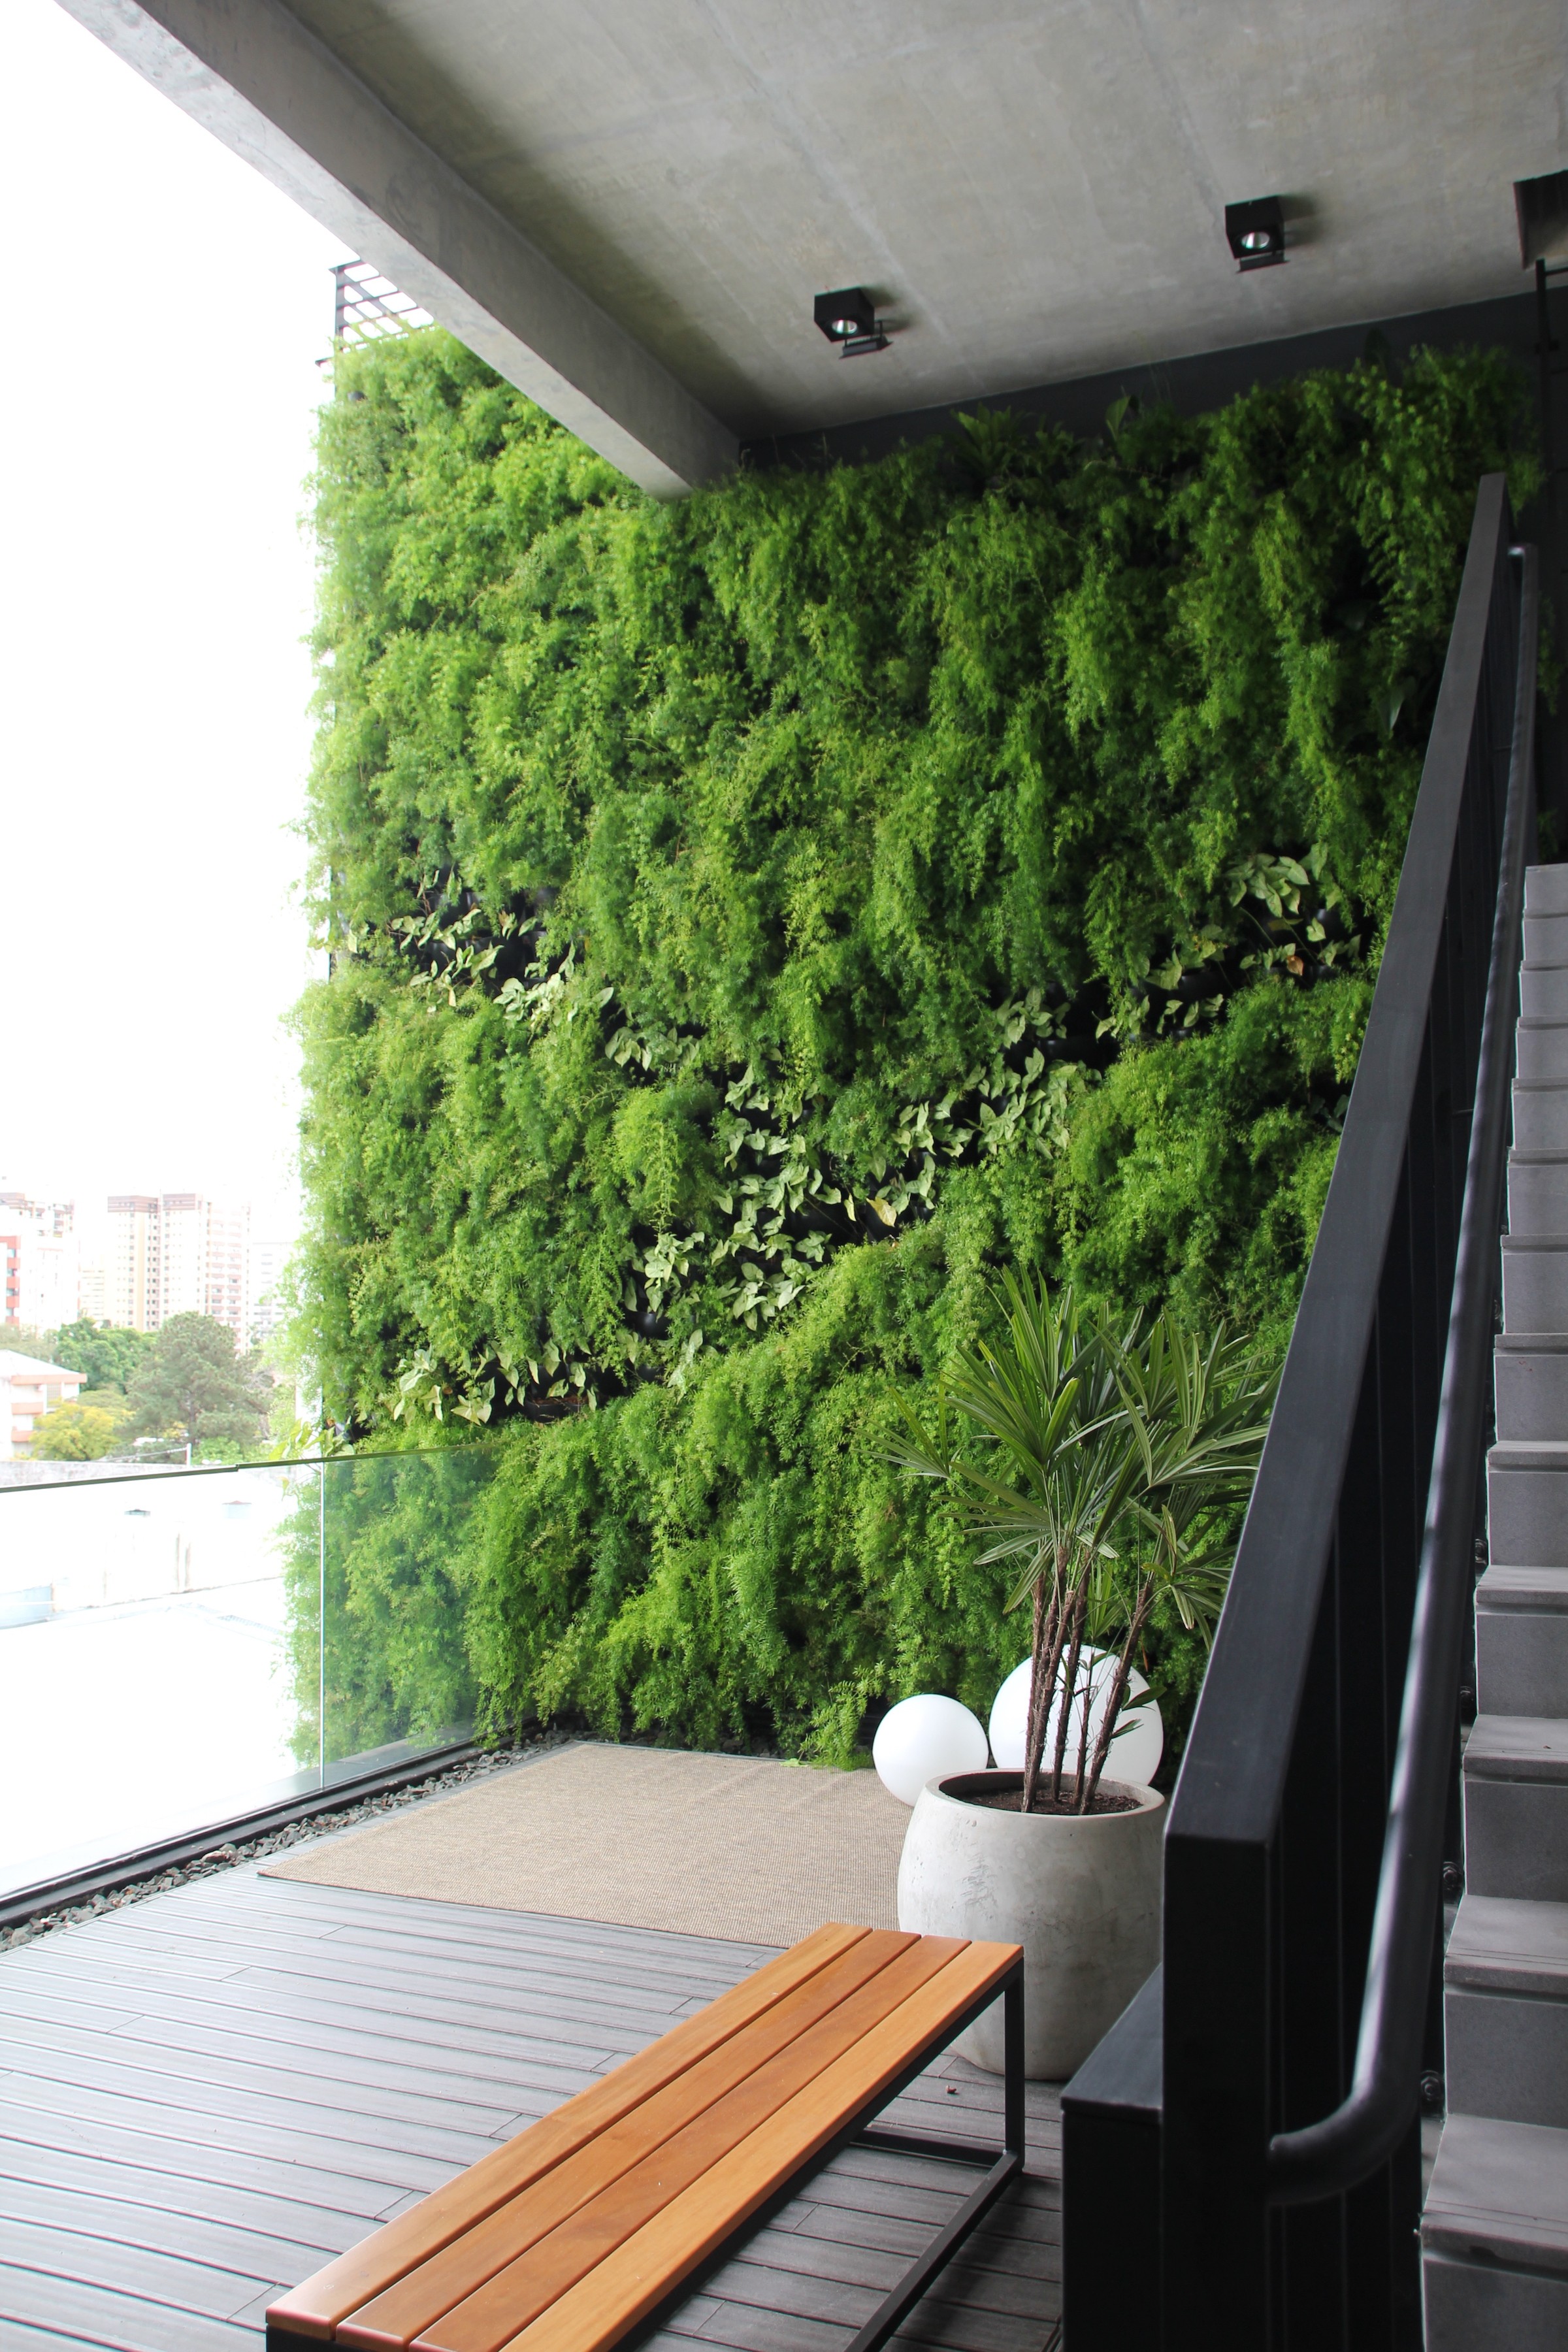 Ecotelhado também oferece o jardim vertical (Foto: Divulgação)